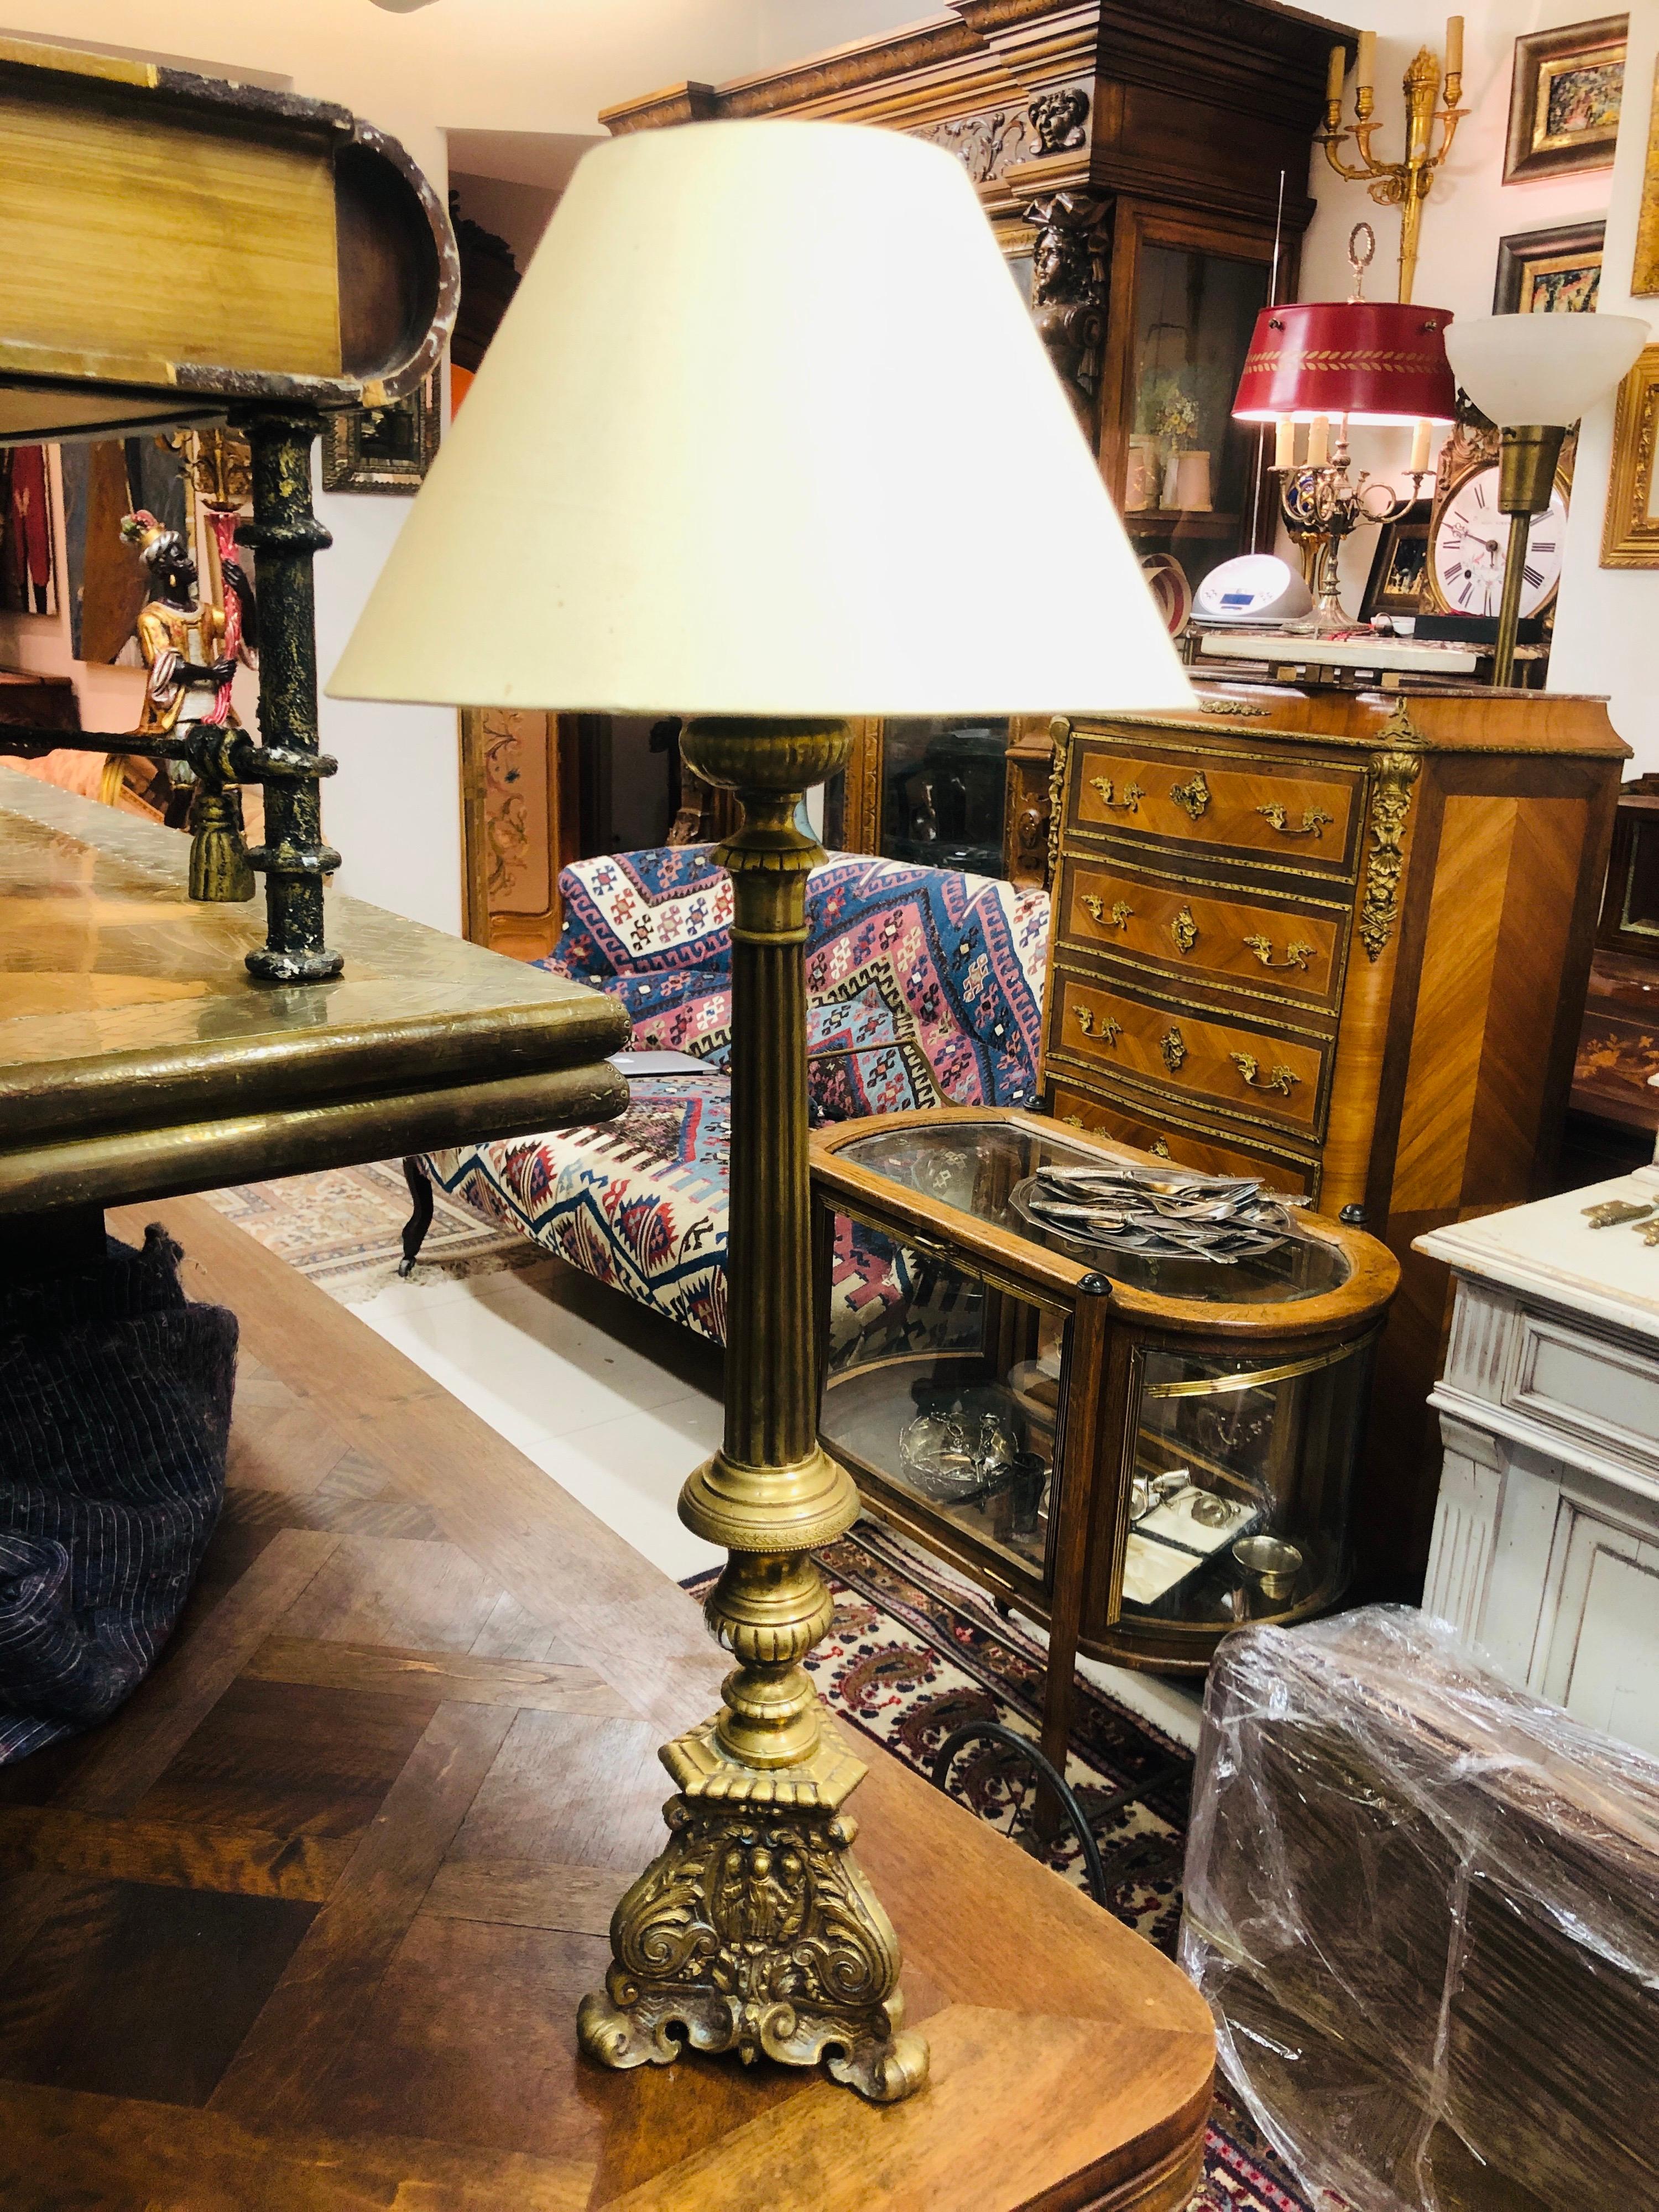 Lampe de table française reposant sur une base en laiton richement décorée de petits personnages sur le fond.
France, vers 1920.